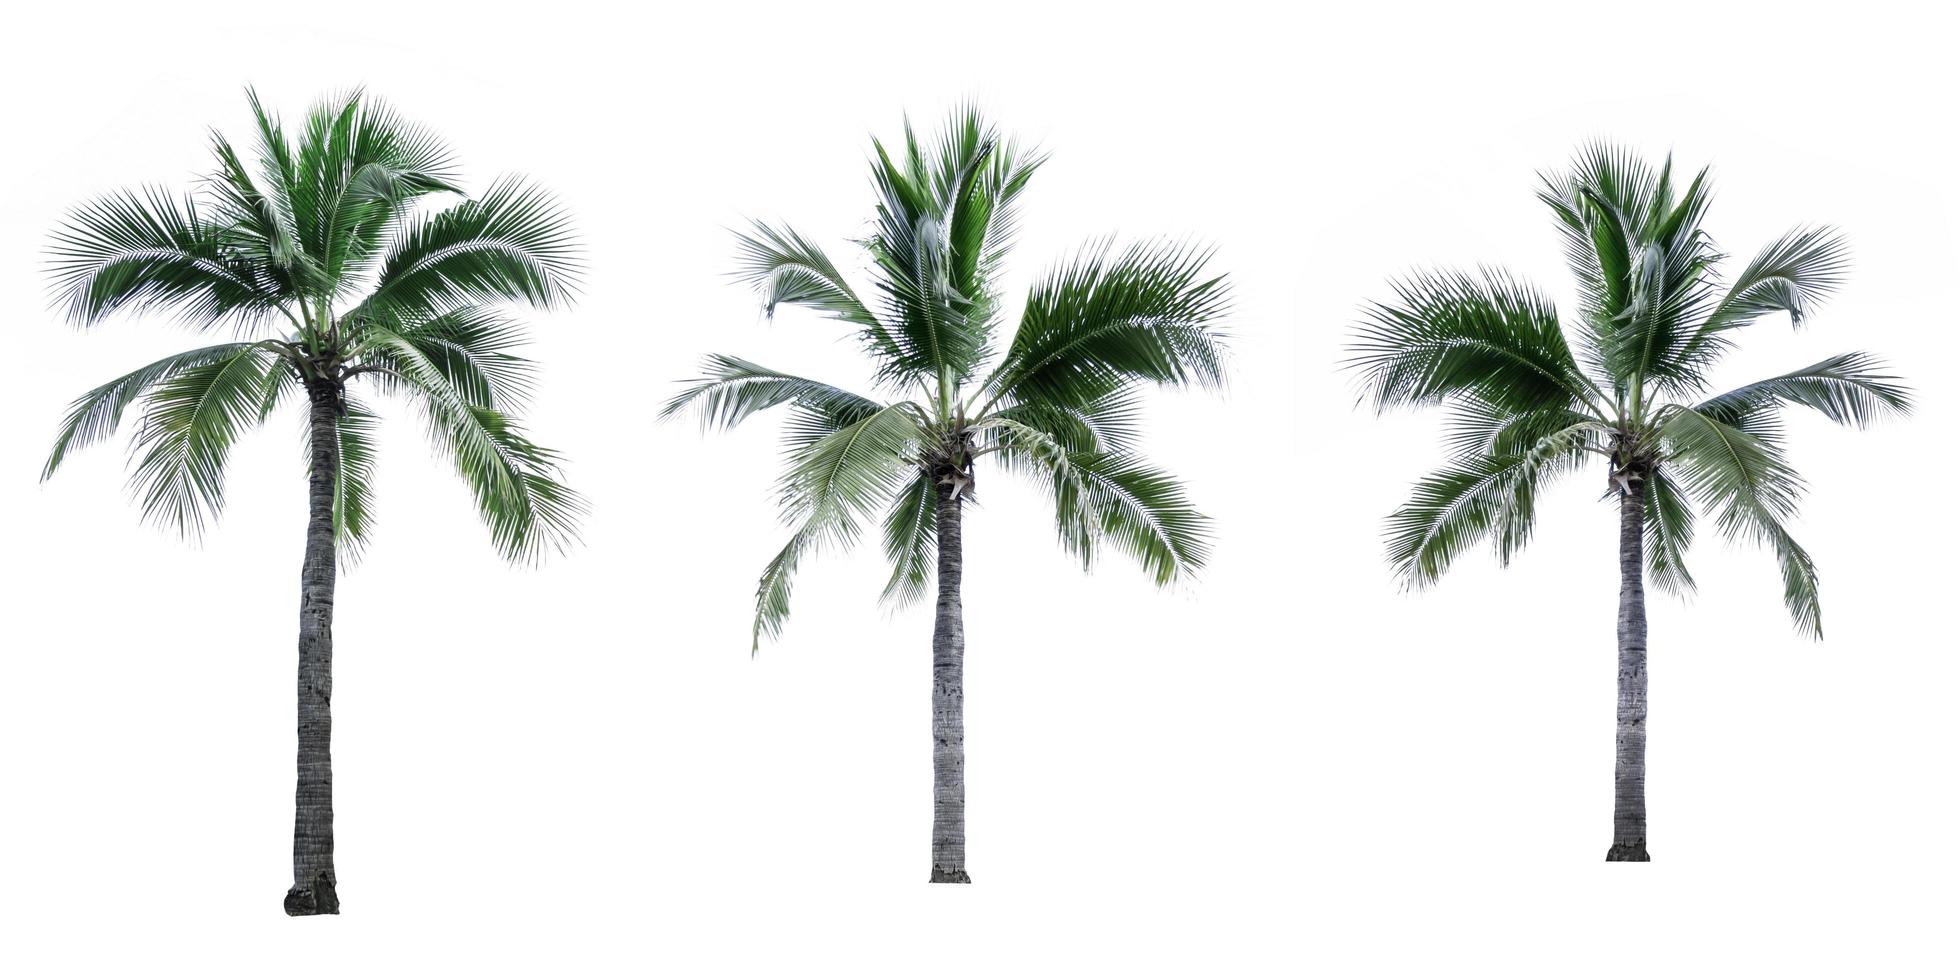 Satz von Kokospalmen isoliert auf weißem Hintergrund. Palme. tropische Palme. foto